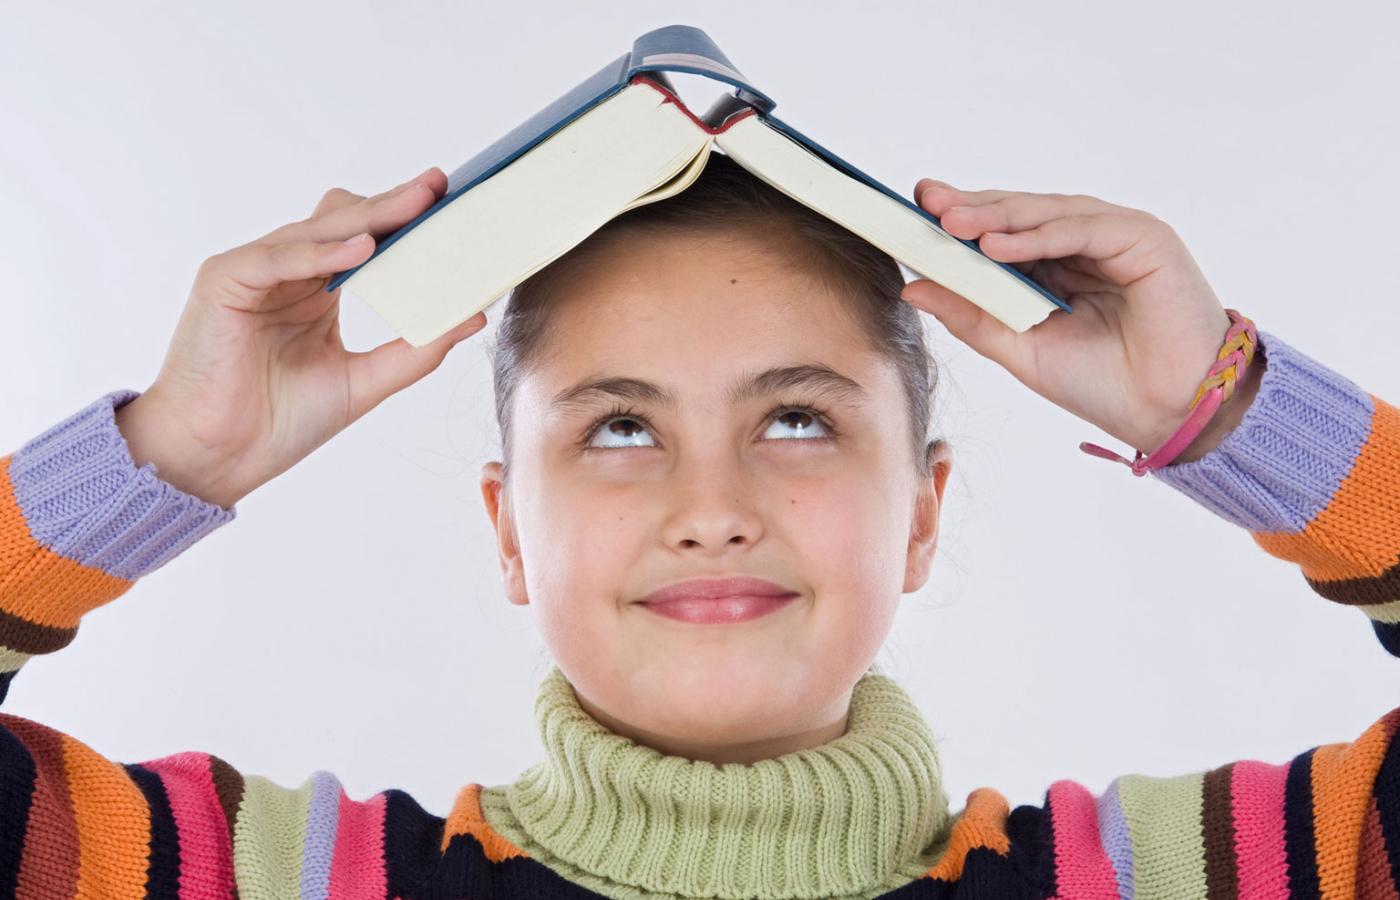 O wiele chętniej czytają dziewczęta niż chłopcy. Aż 23 proc. chłopców przyznało, że nie czyta żadnych książek.